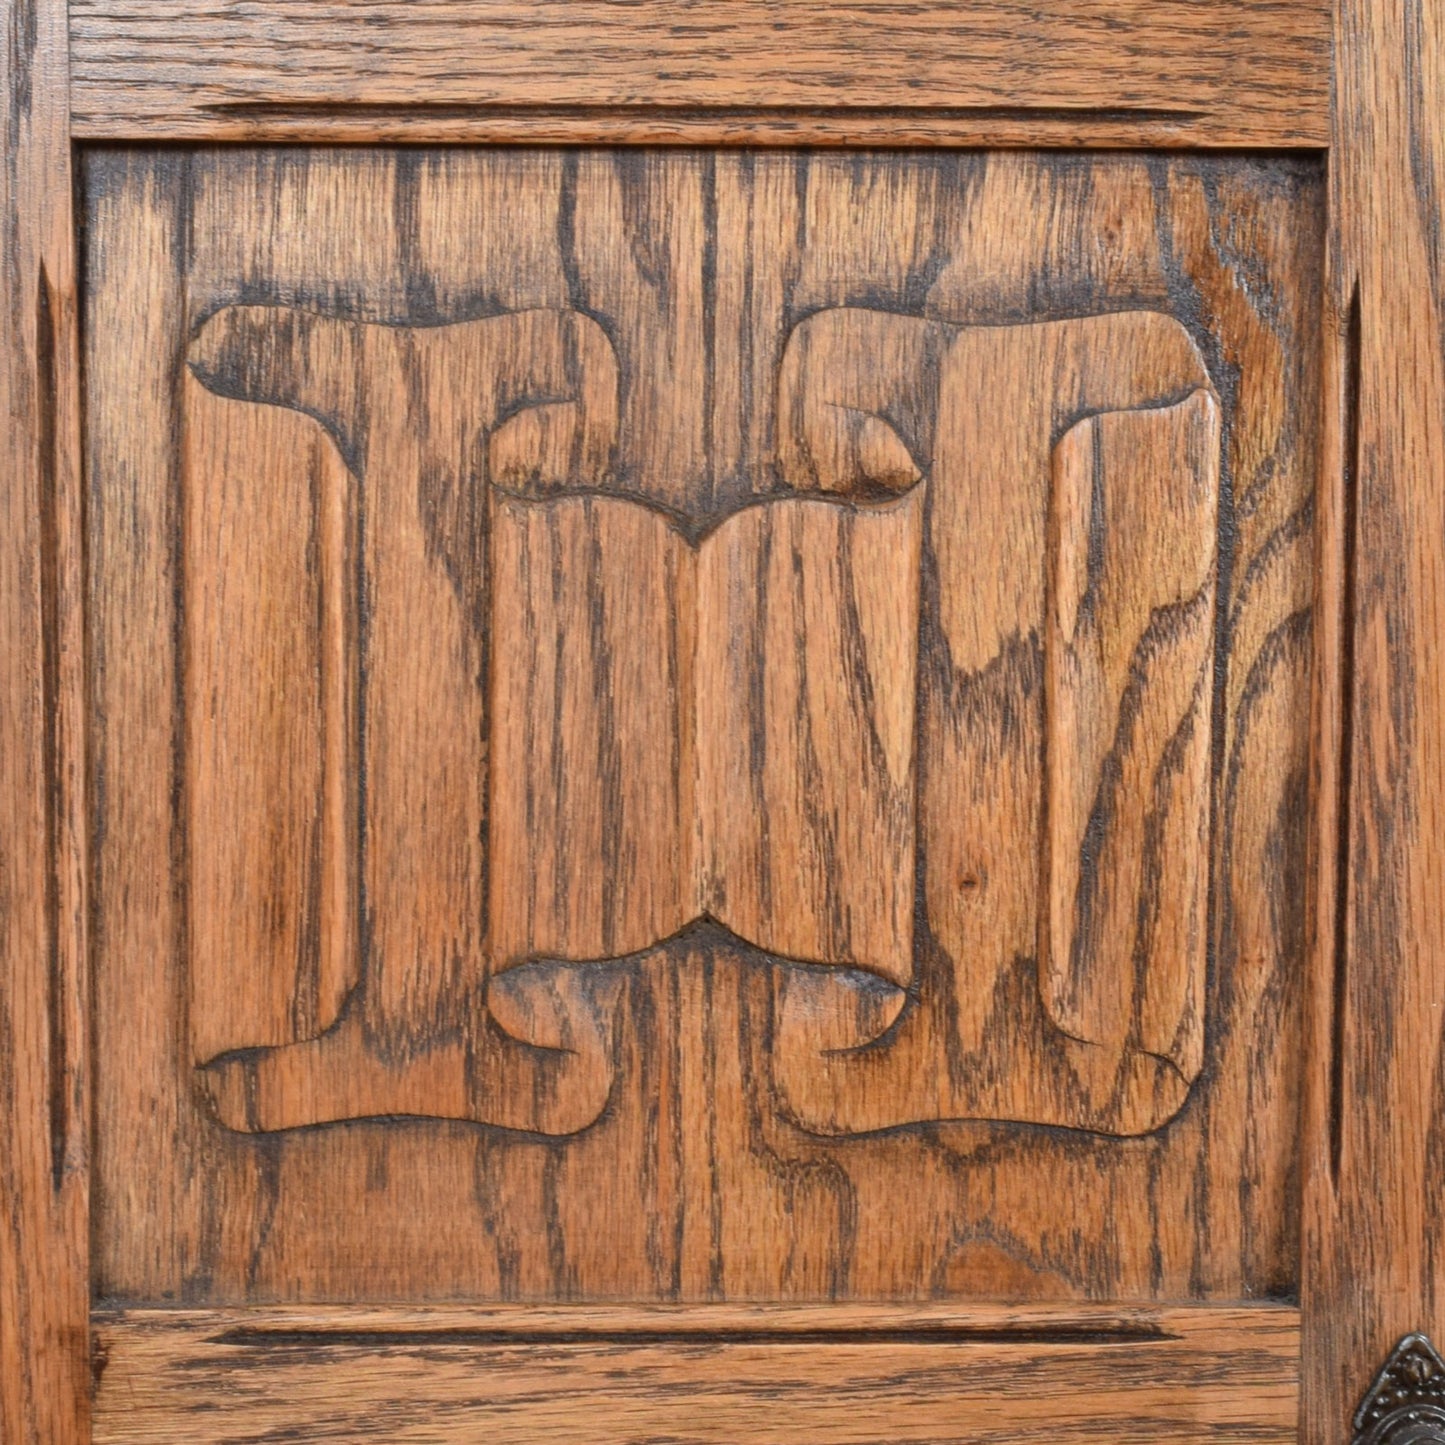 Carved Oak Hi-Fi Cabinet